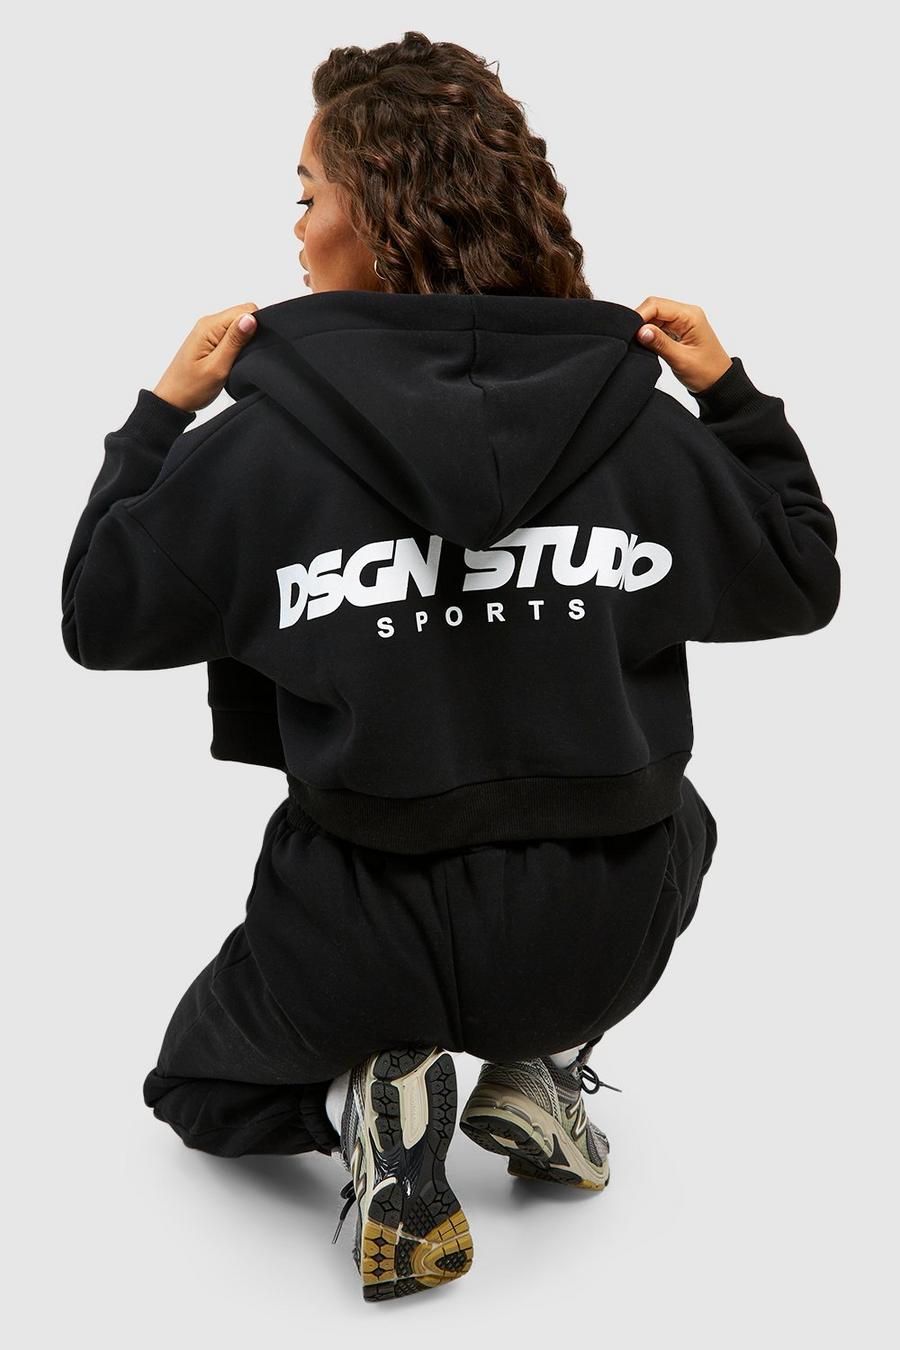 Kastiger Dsgn Studio Sports Hoodie mit Reißverschluss, Black